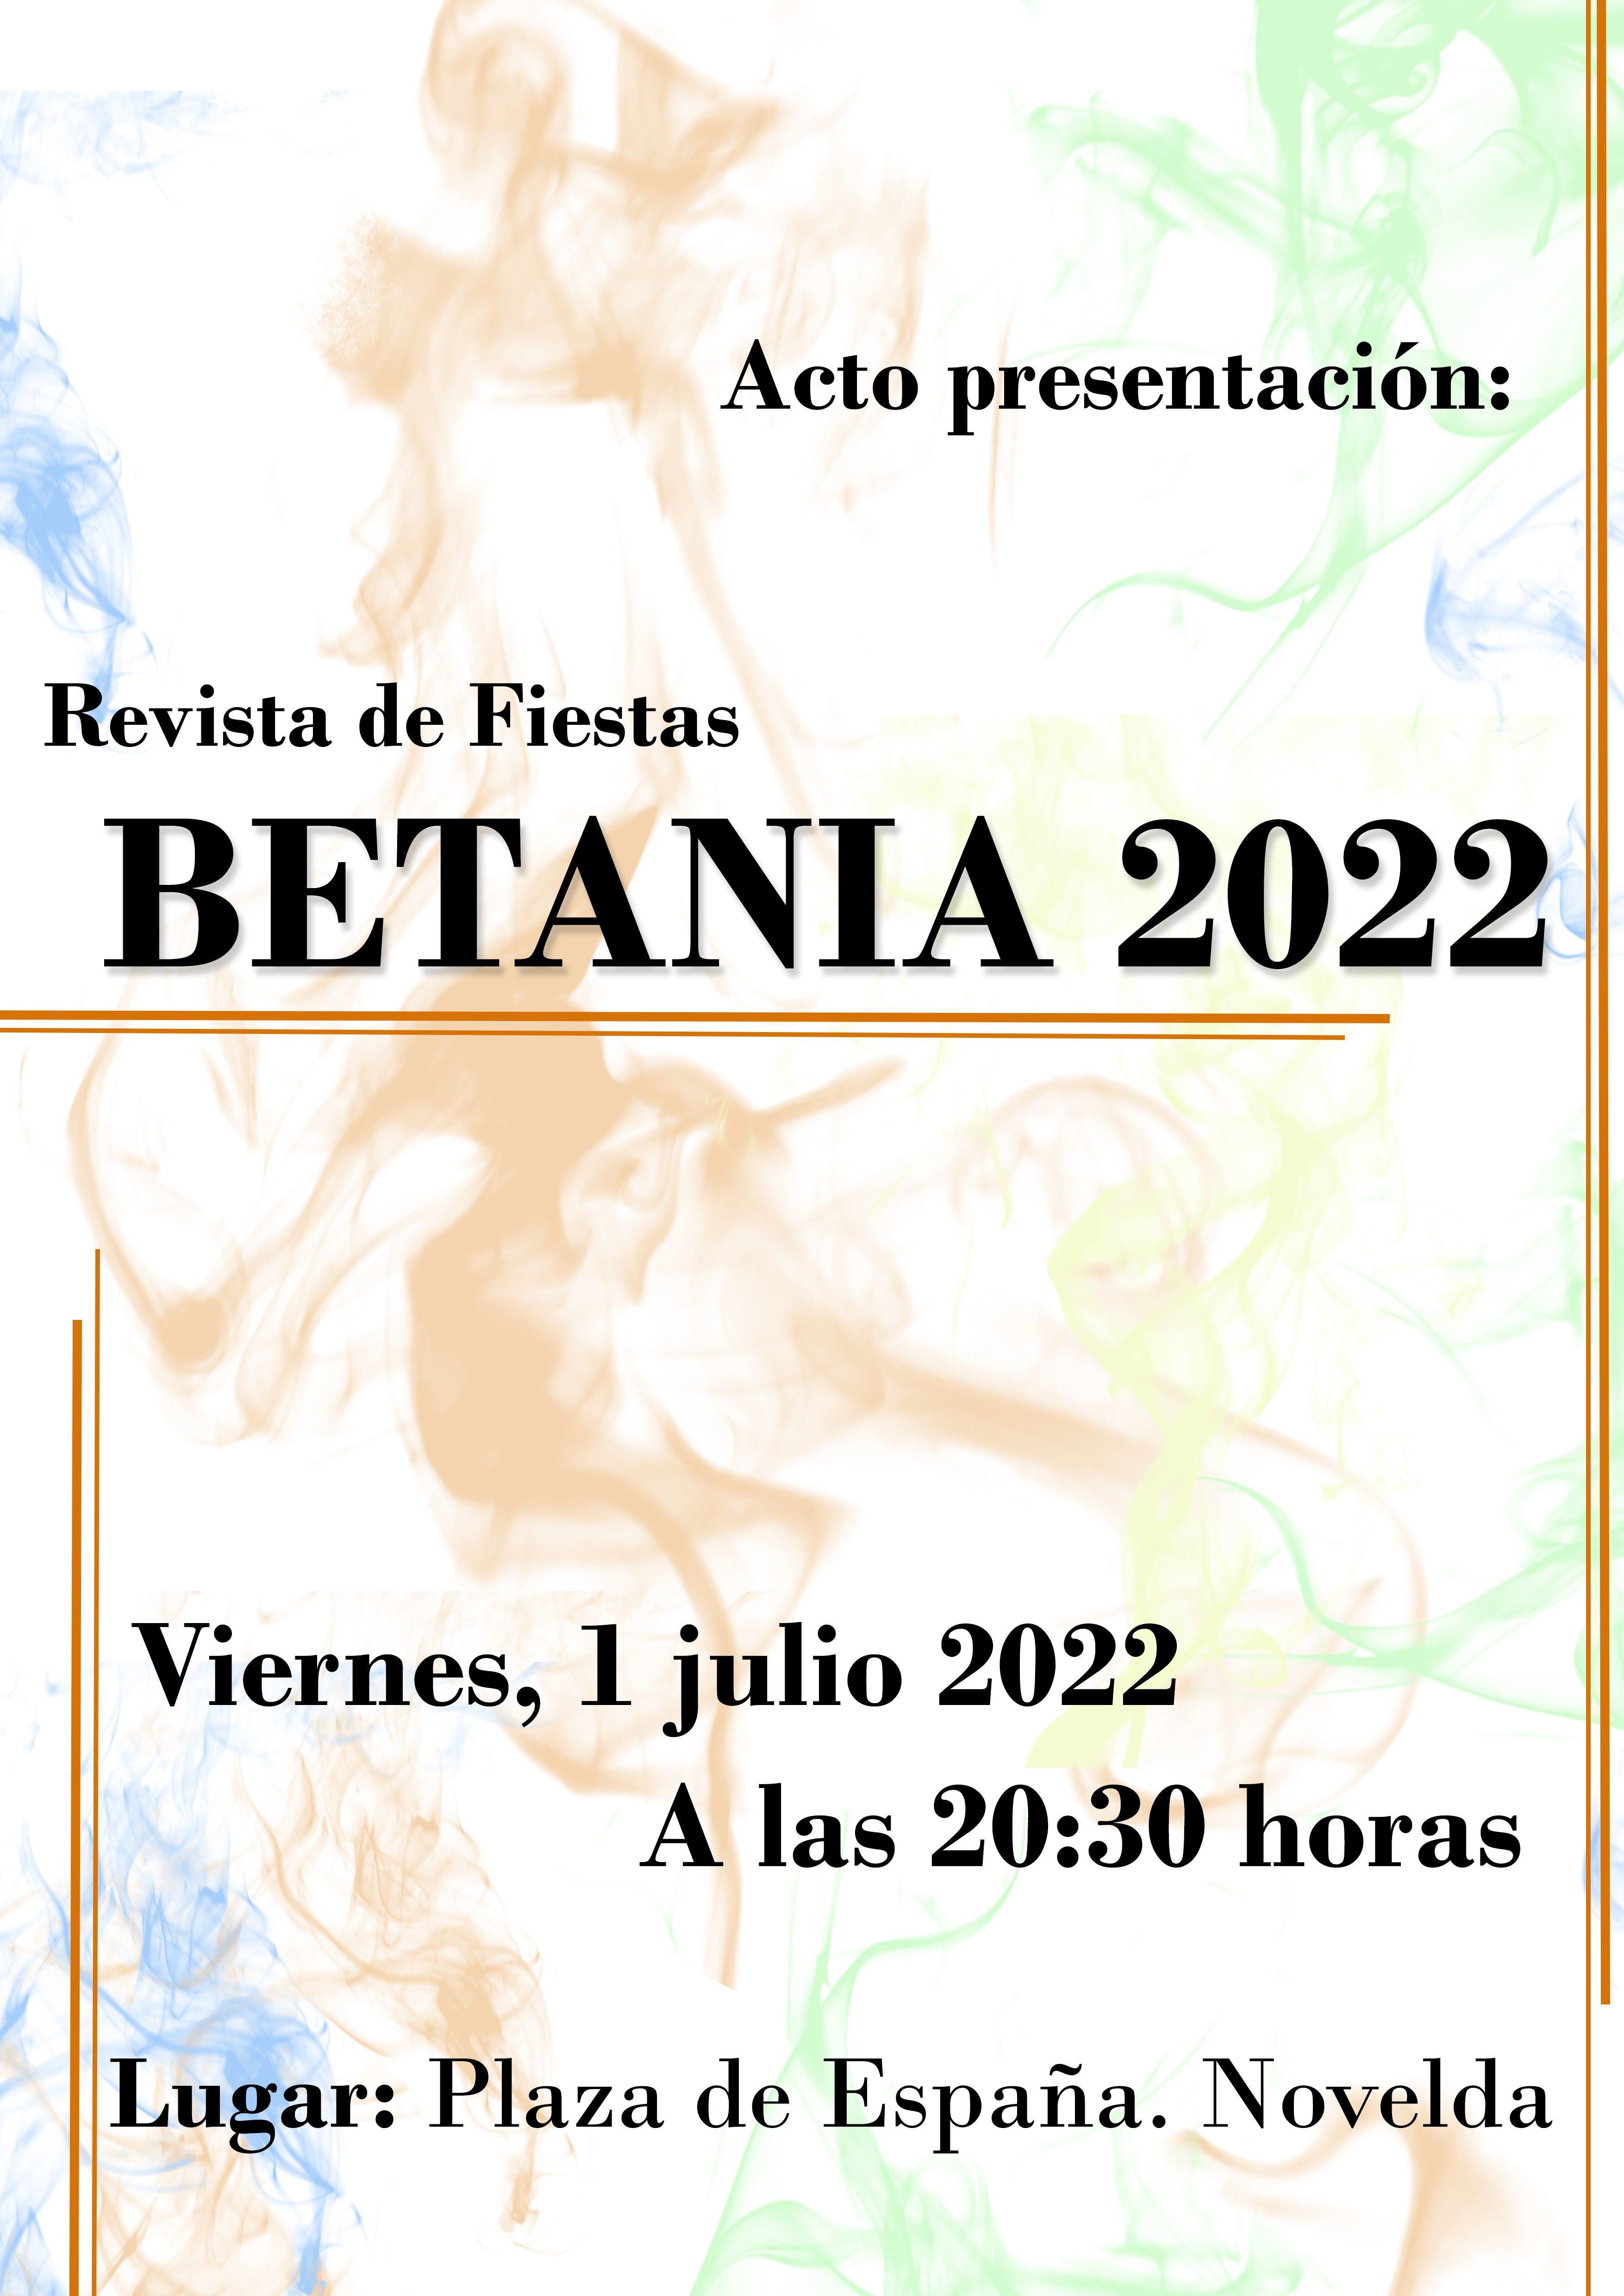 Ayuntamiento de Novelda Betania Presentación Betania 2022 